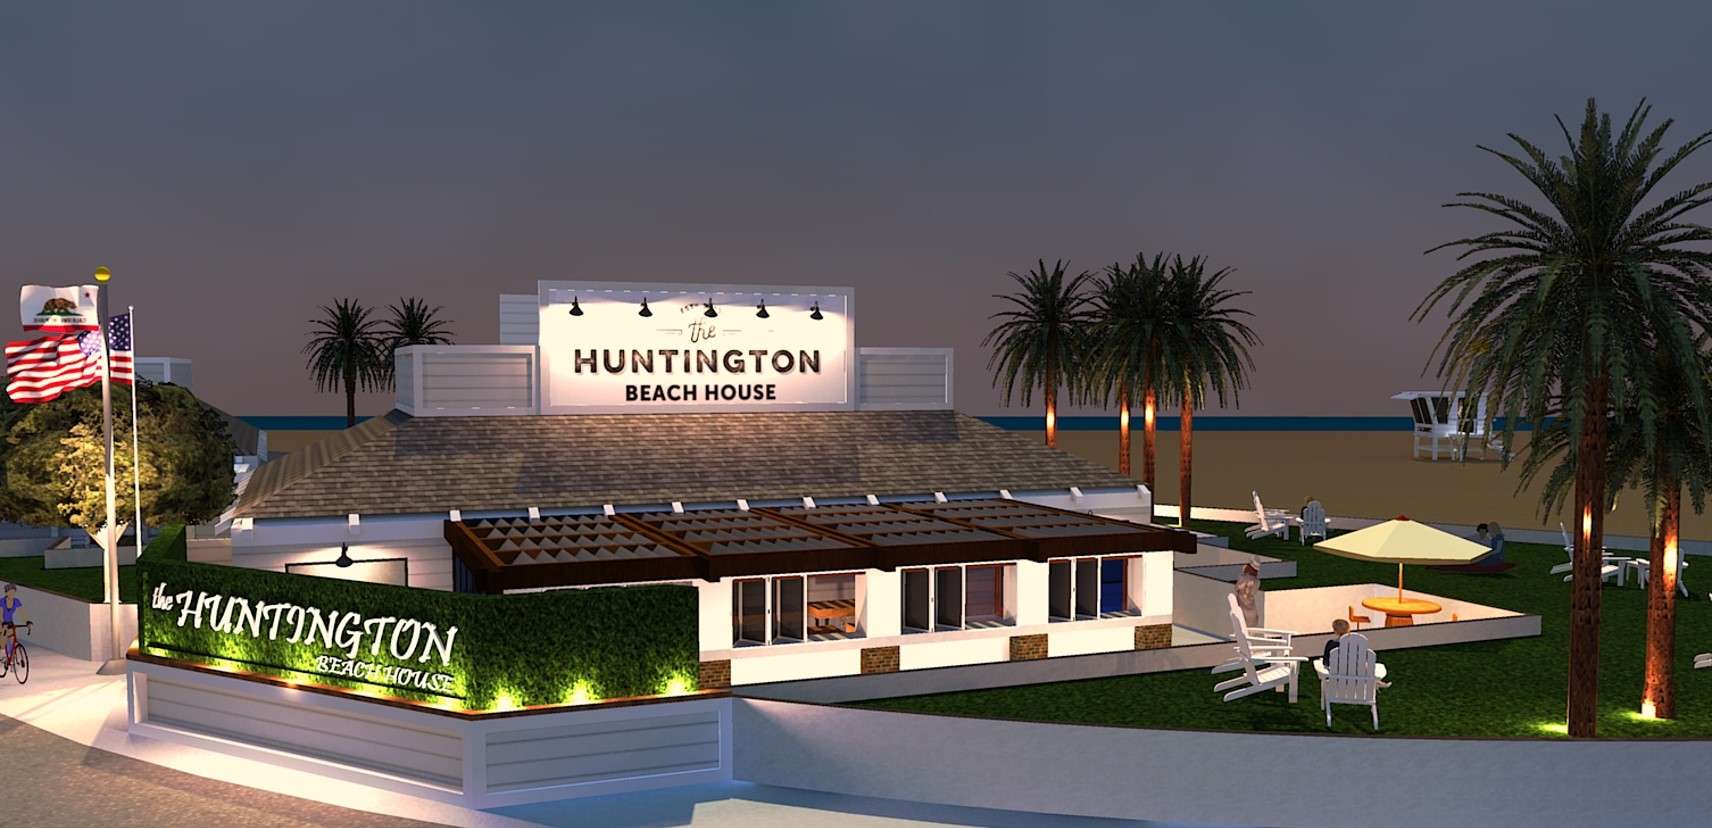 The Huntington Beach House